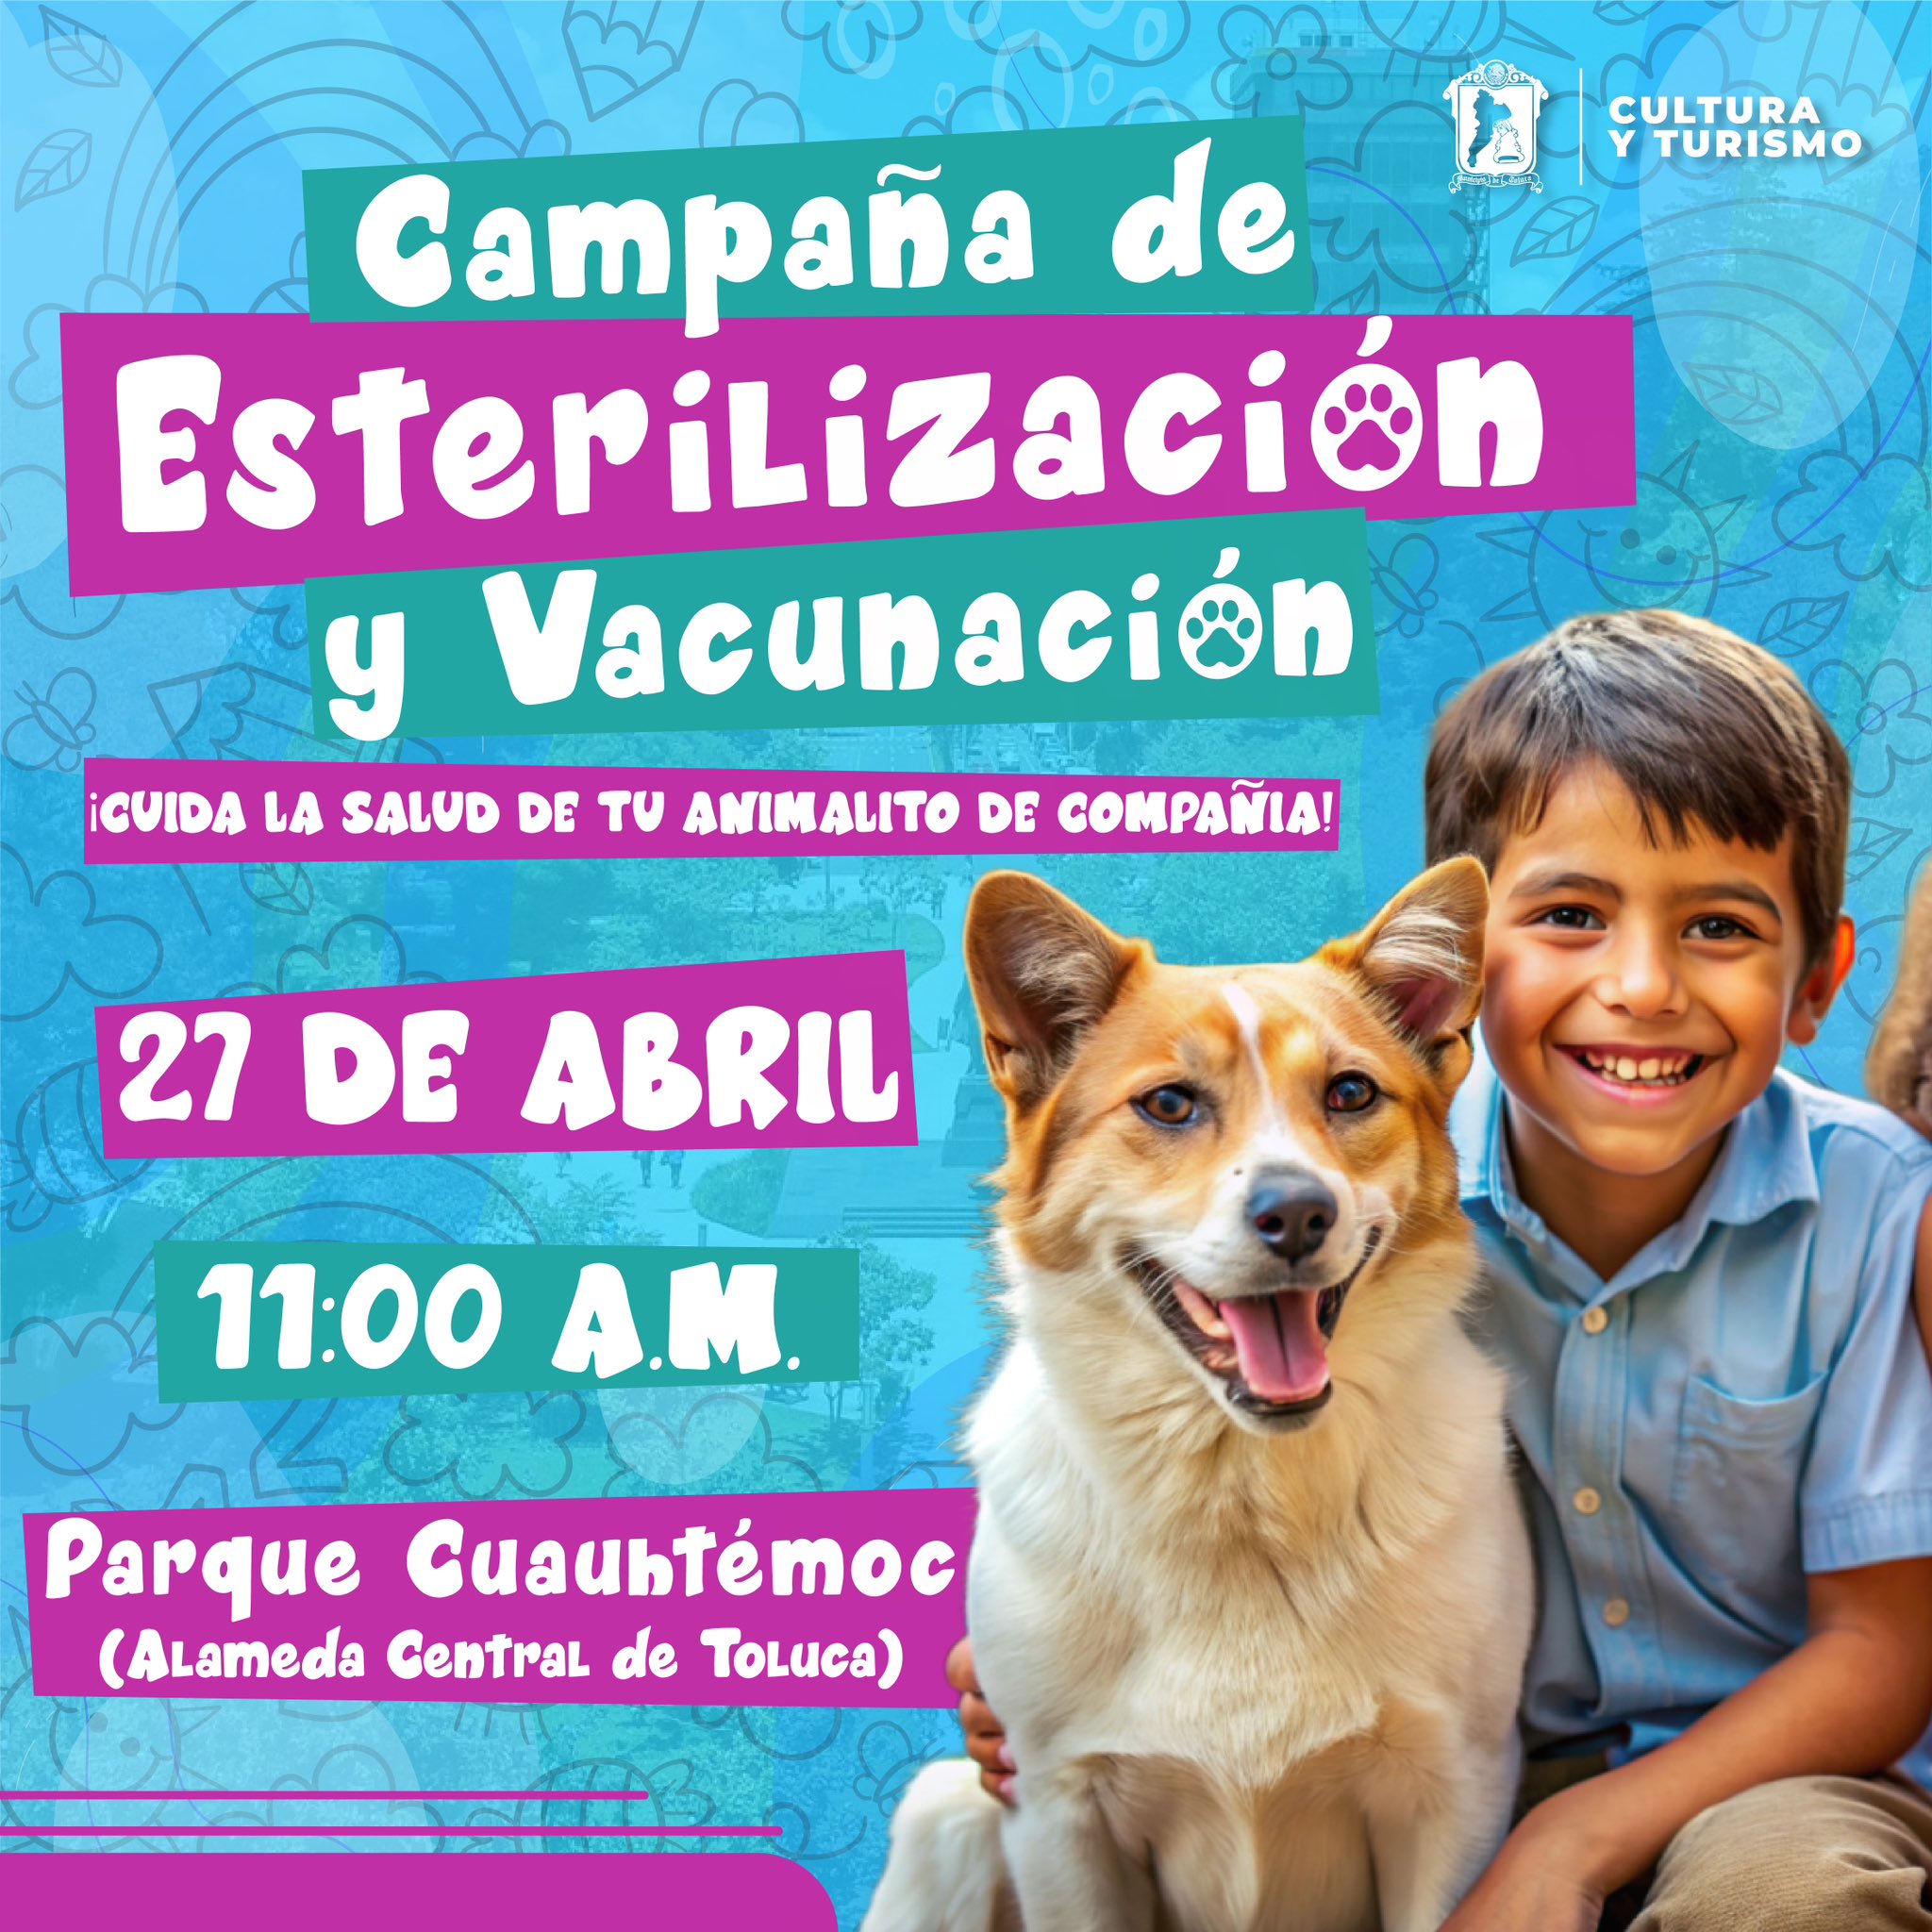 Campaña de estirilización y vacunación en Toluca